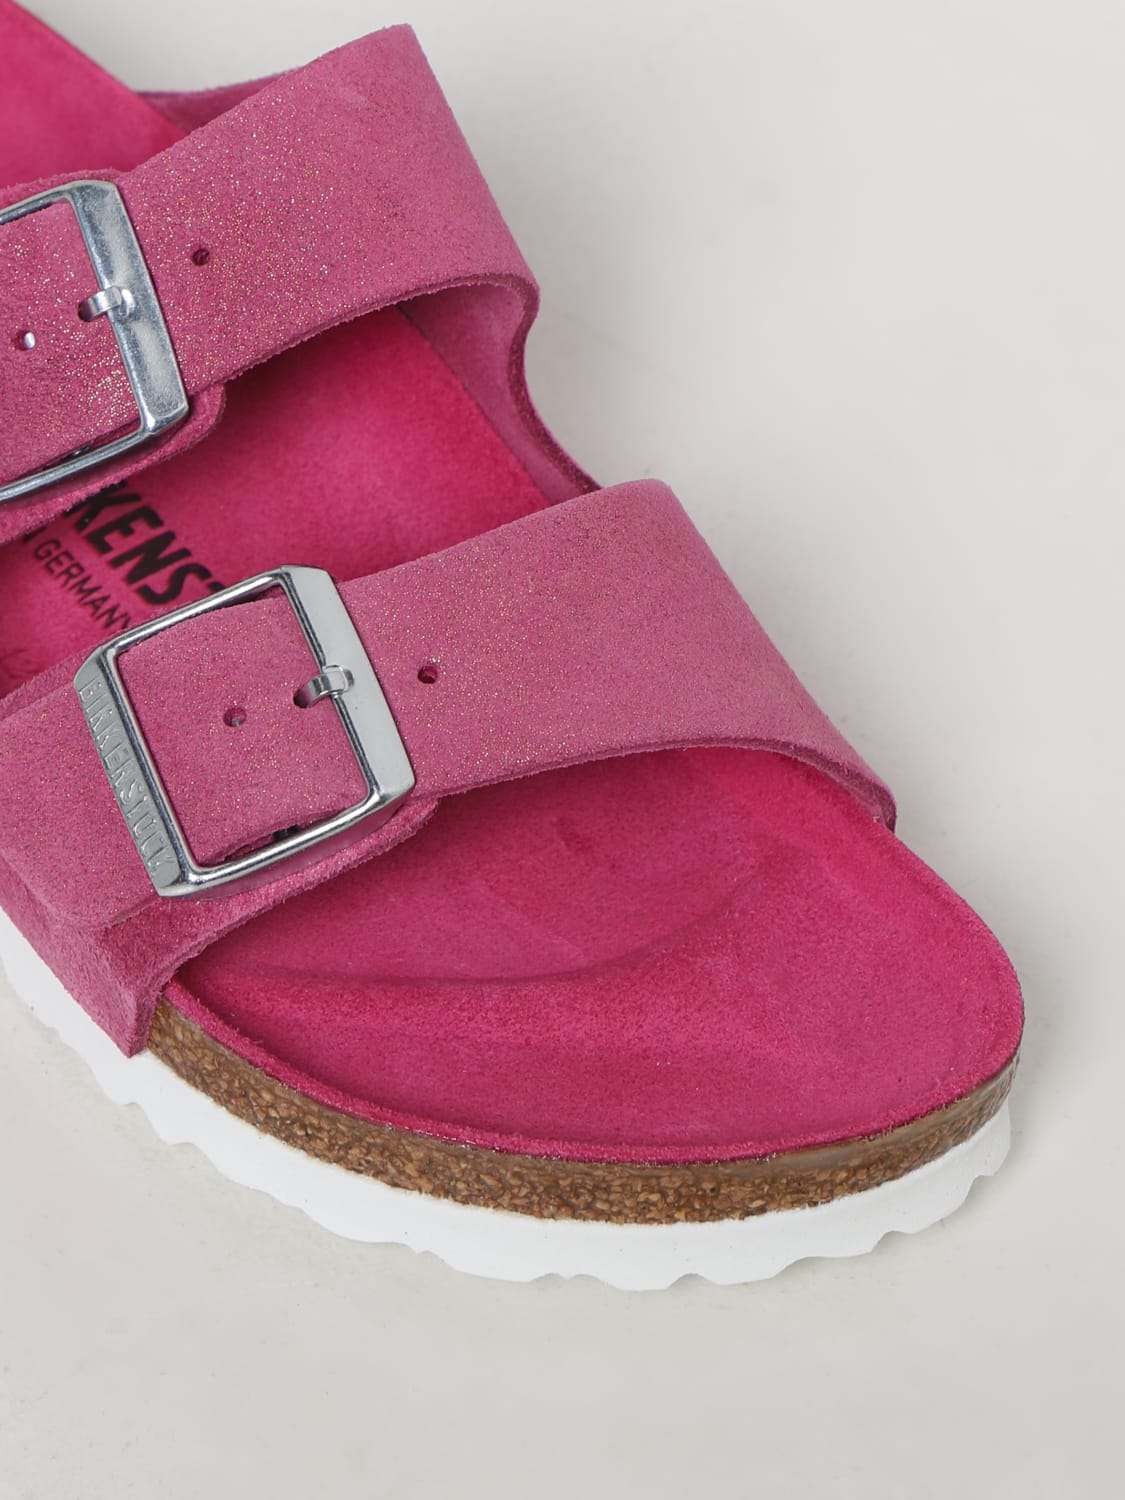 vask Wetland godtgørelse BIRKENSTOCK: flat sandals for woman - Fuchsia | Birkenstock flat sandals  1024218 online at GIGLIO.COM